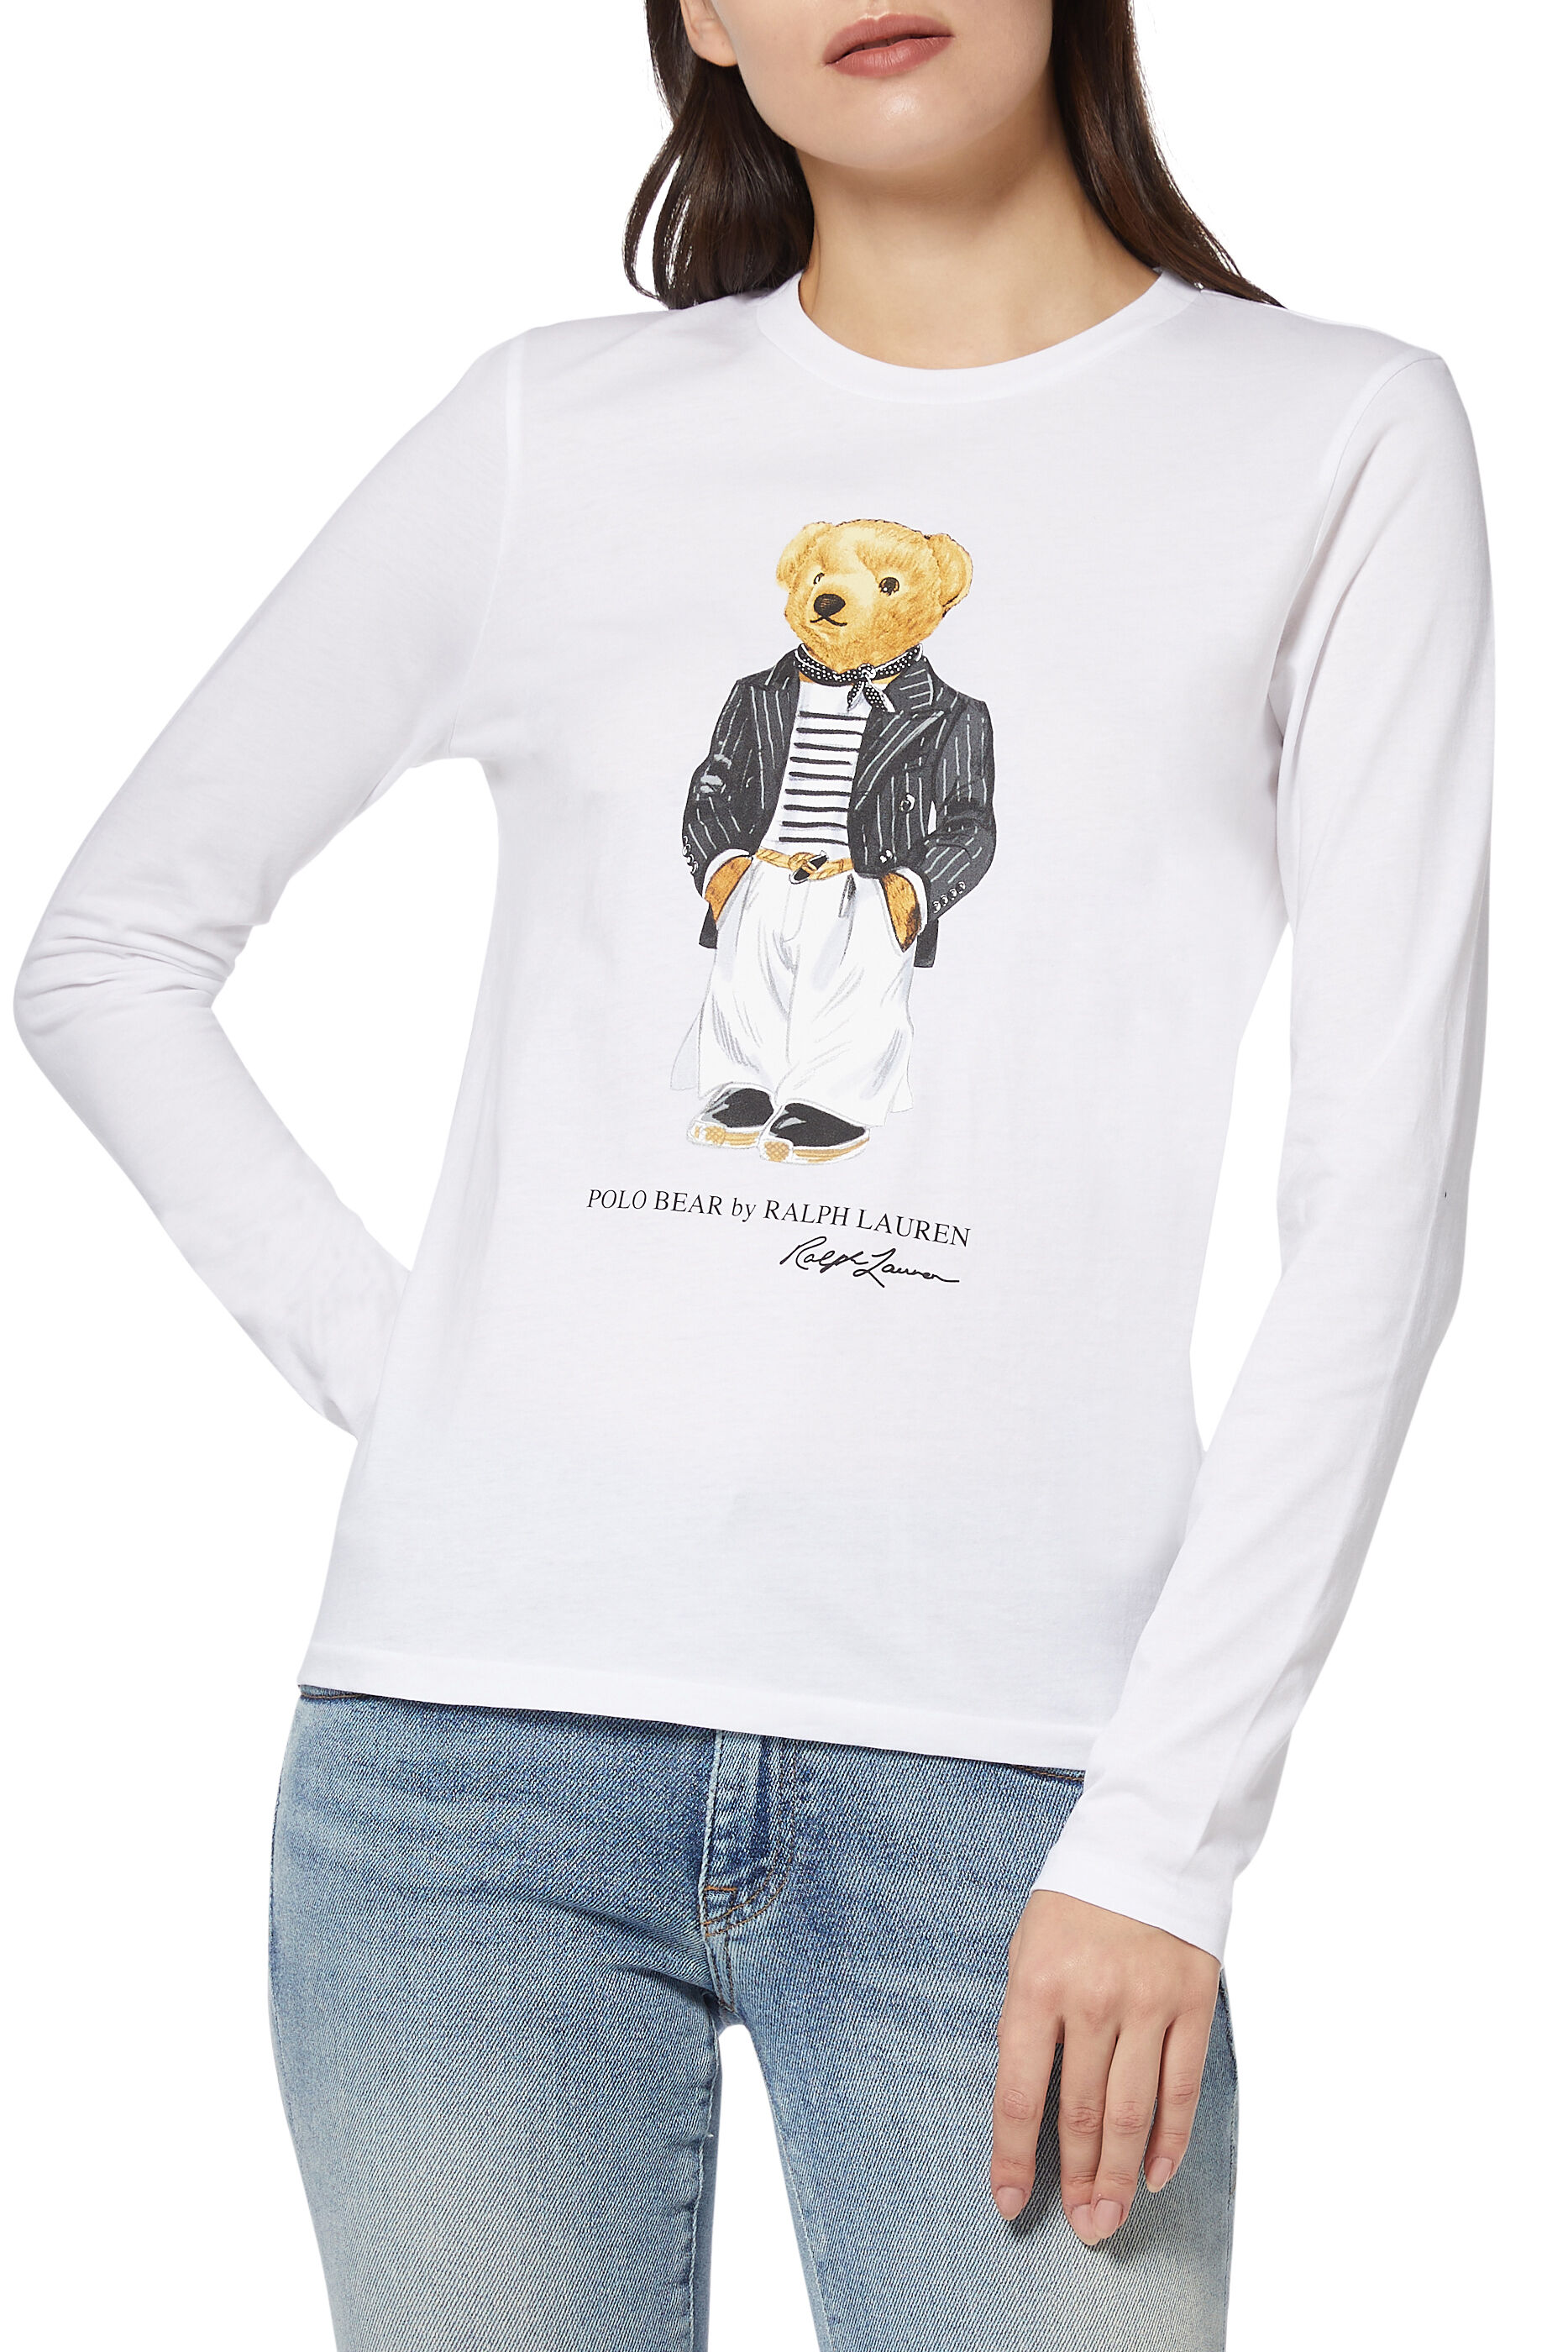 polo bear shirt women